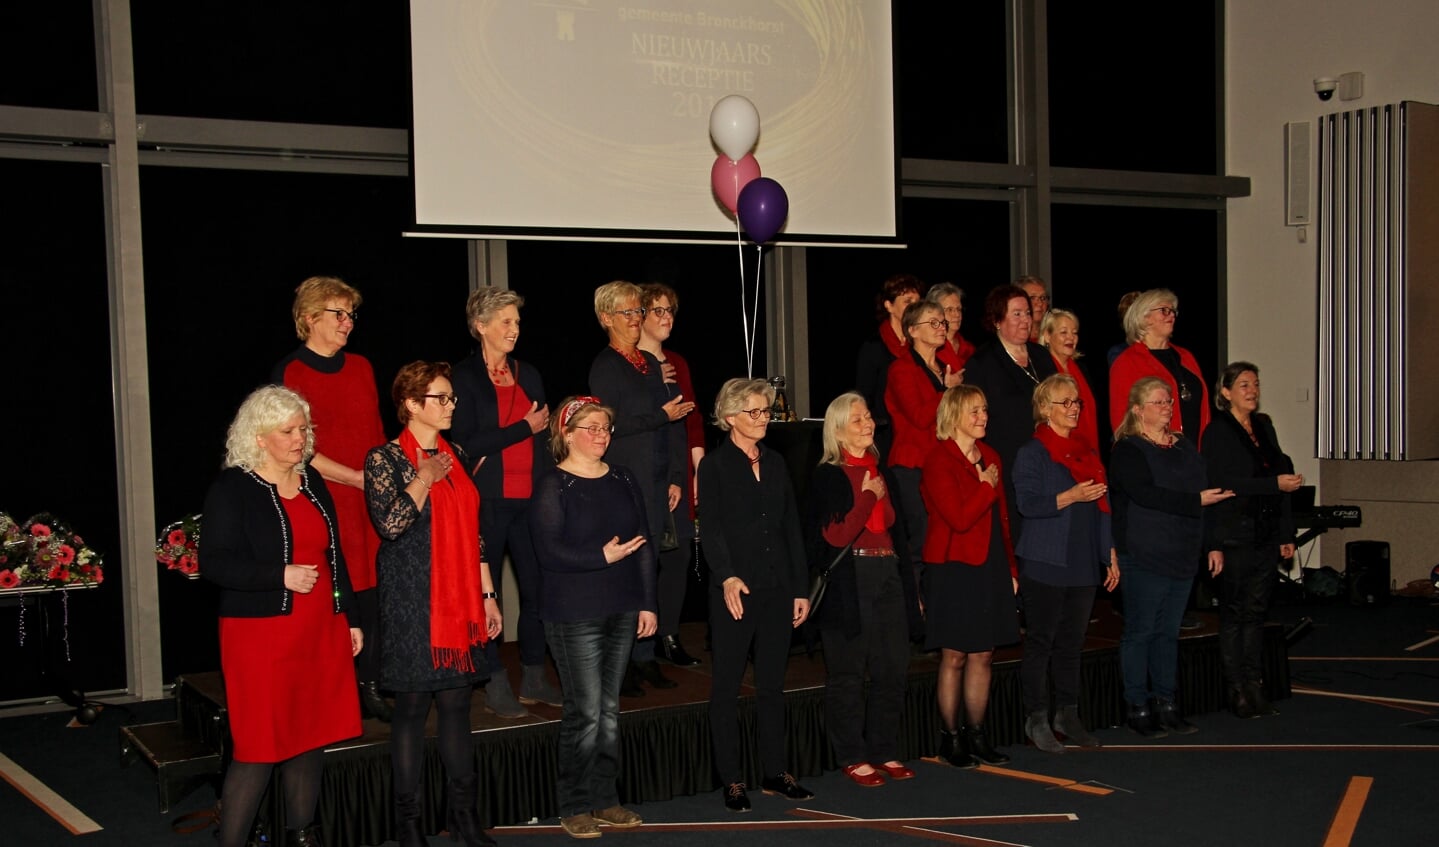 Het koor Amazing uit Drempt verzorgde een muzikale opening van de nieuwjaarsreceptie van de gemeente Bronckhorst. Foto: Liesbeth Spaansen